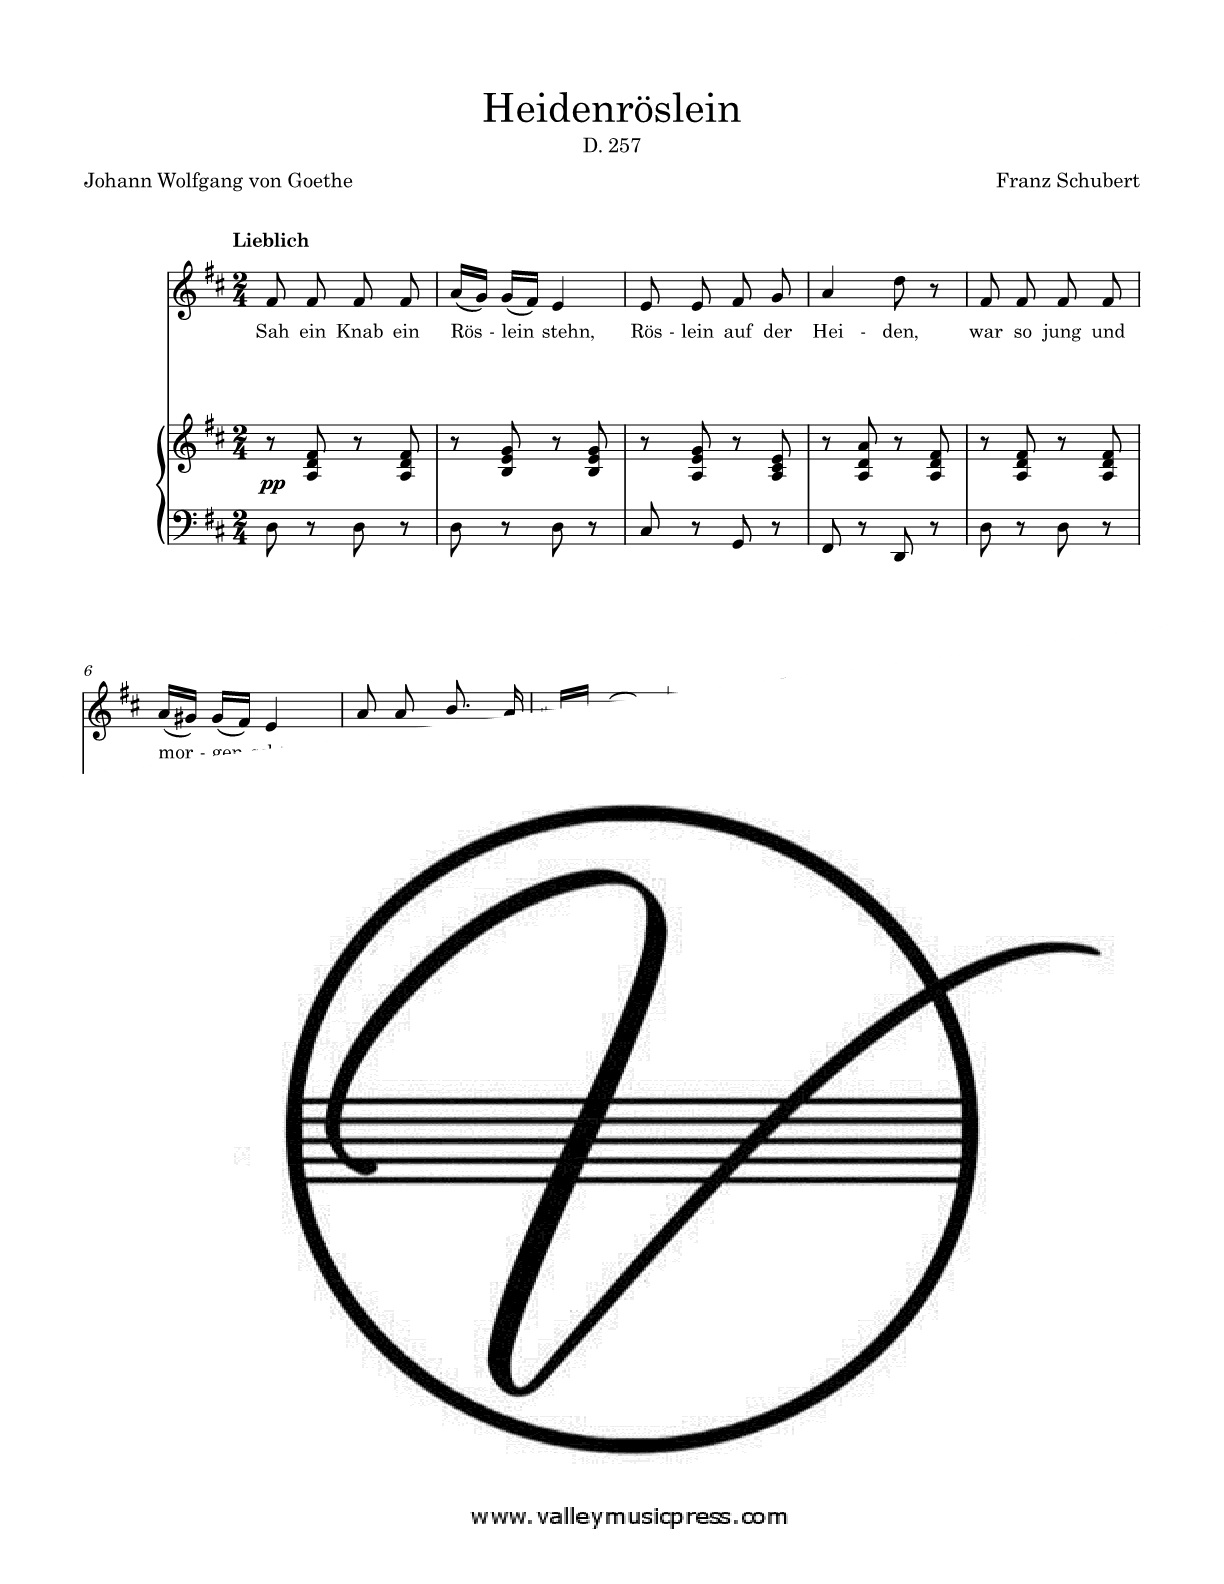 Schubert - Heidenroslein D. 257 Op. 3 No. 3 (Voice) - Click Image to Close